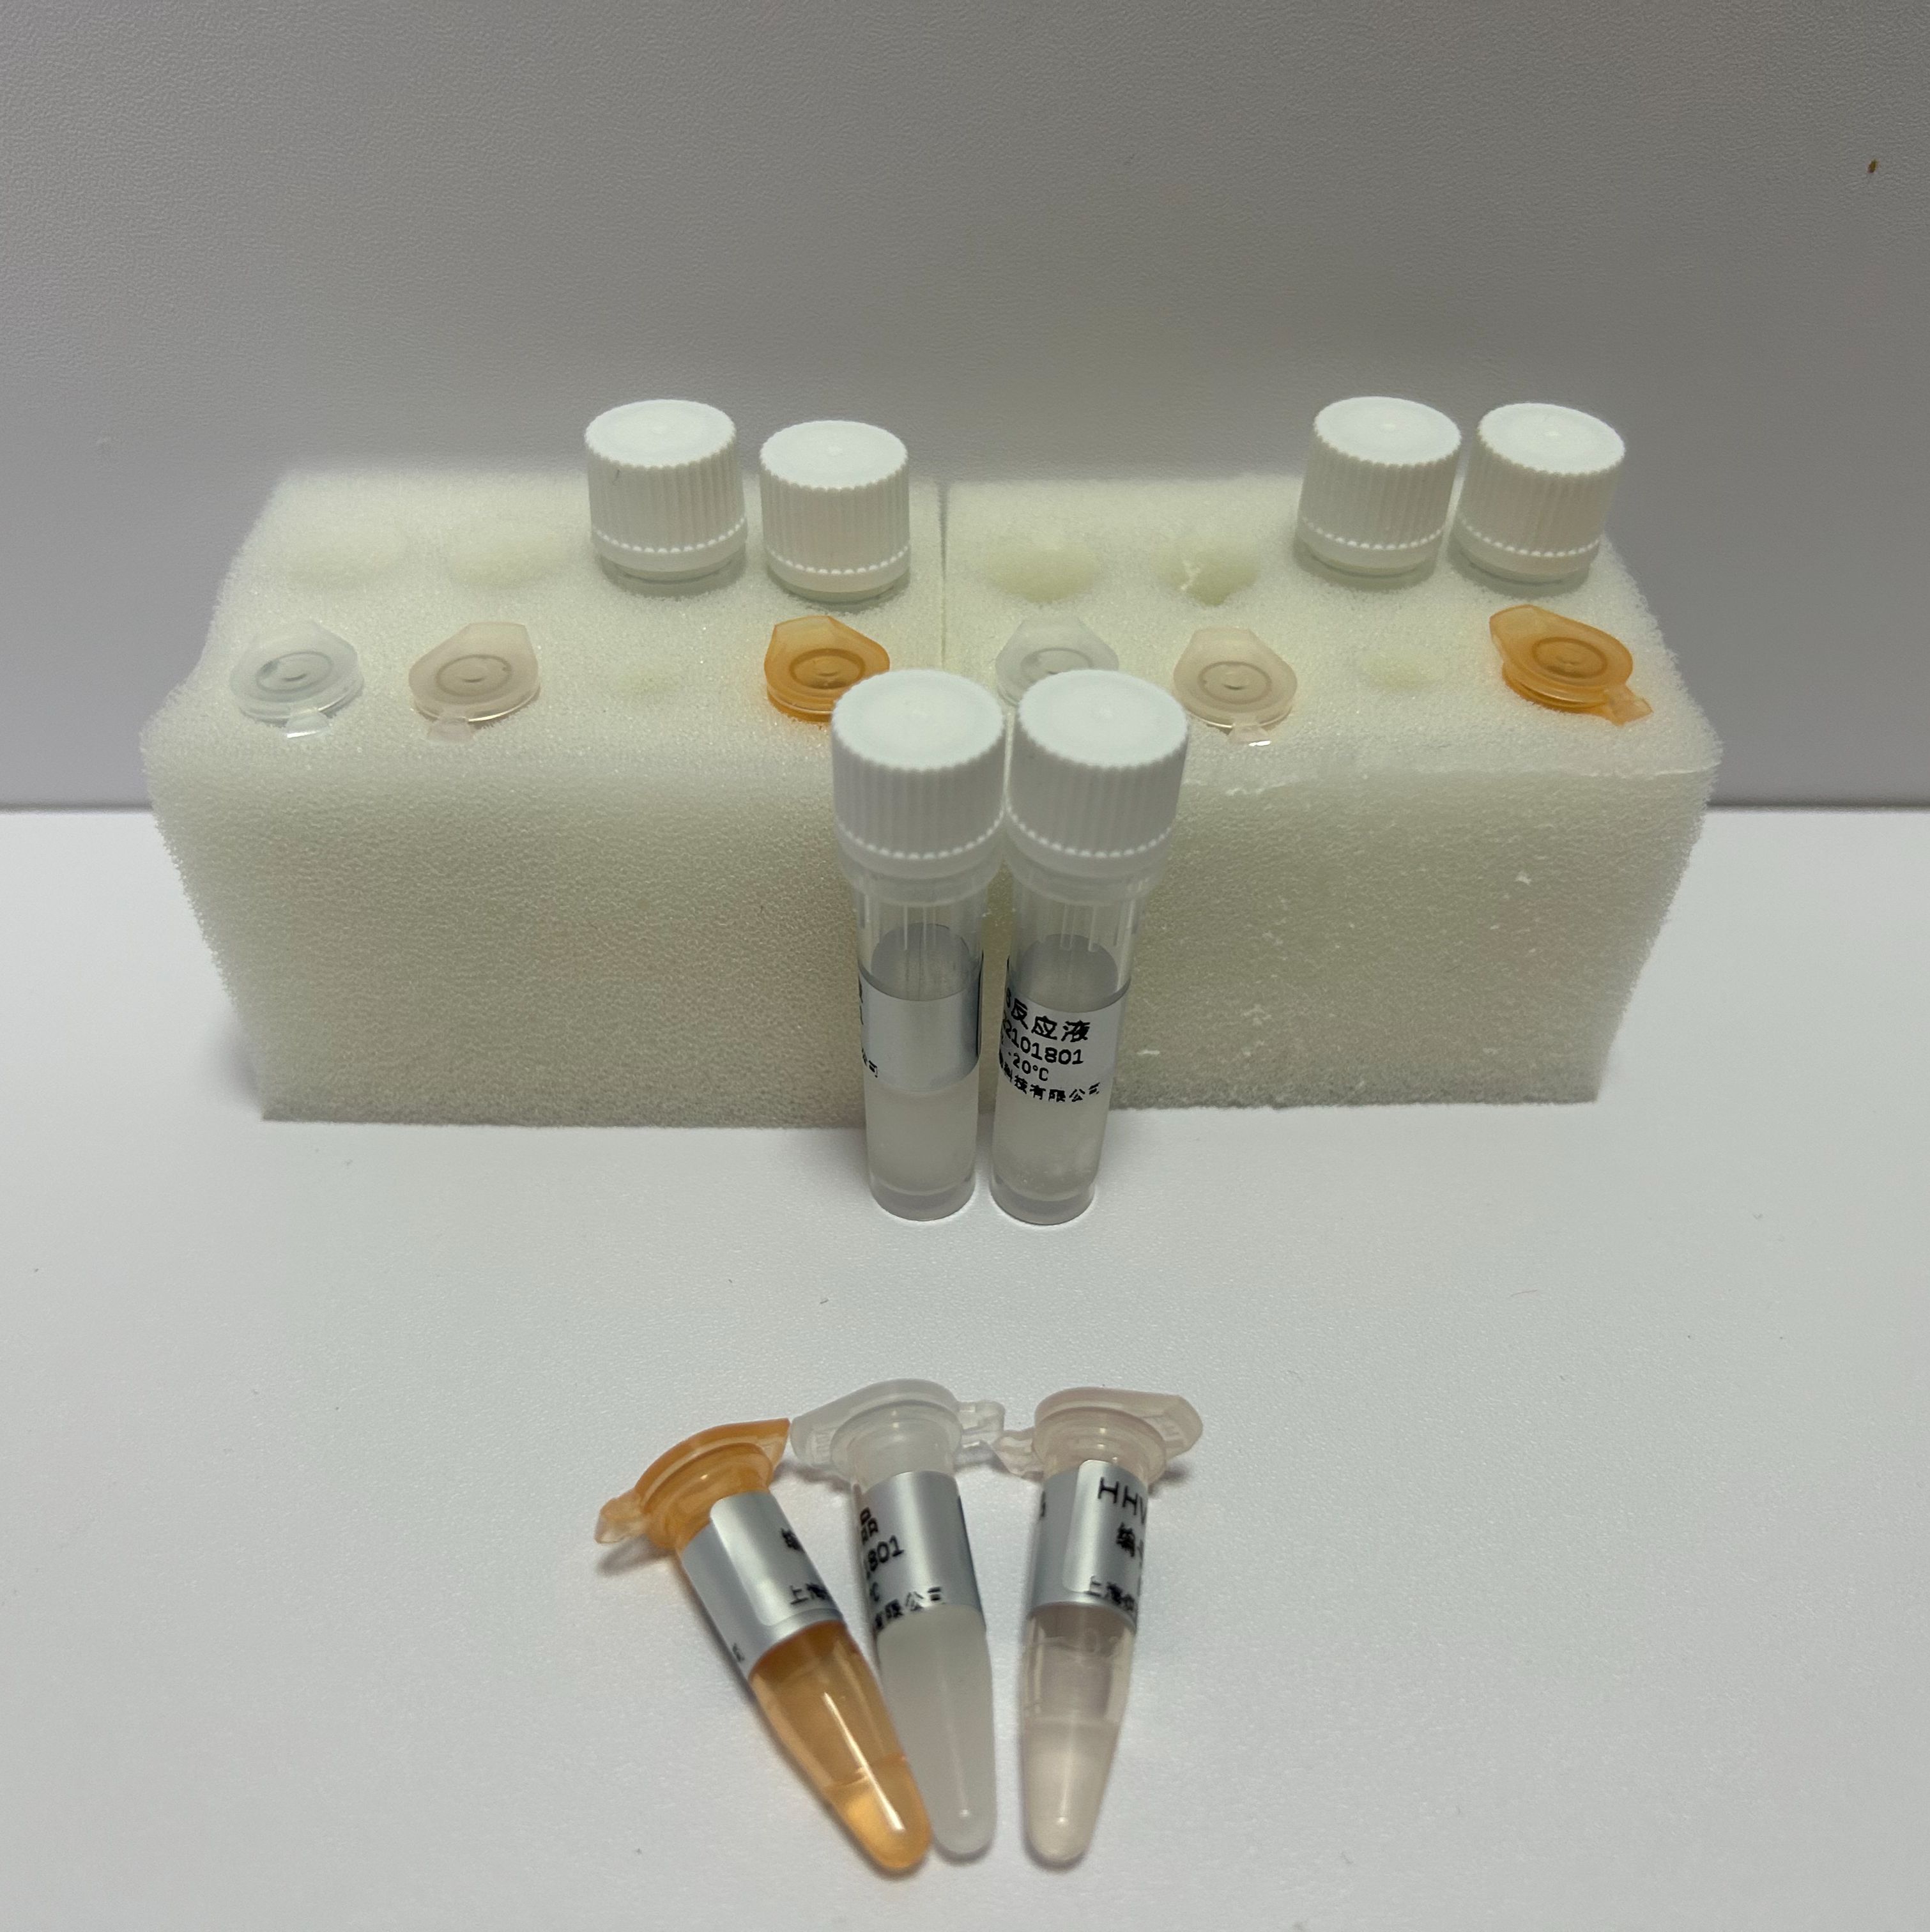 丝状支原体丝状亚种SC型探针法荧光定量PCR试剂盒